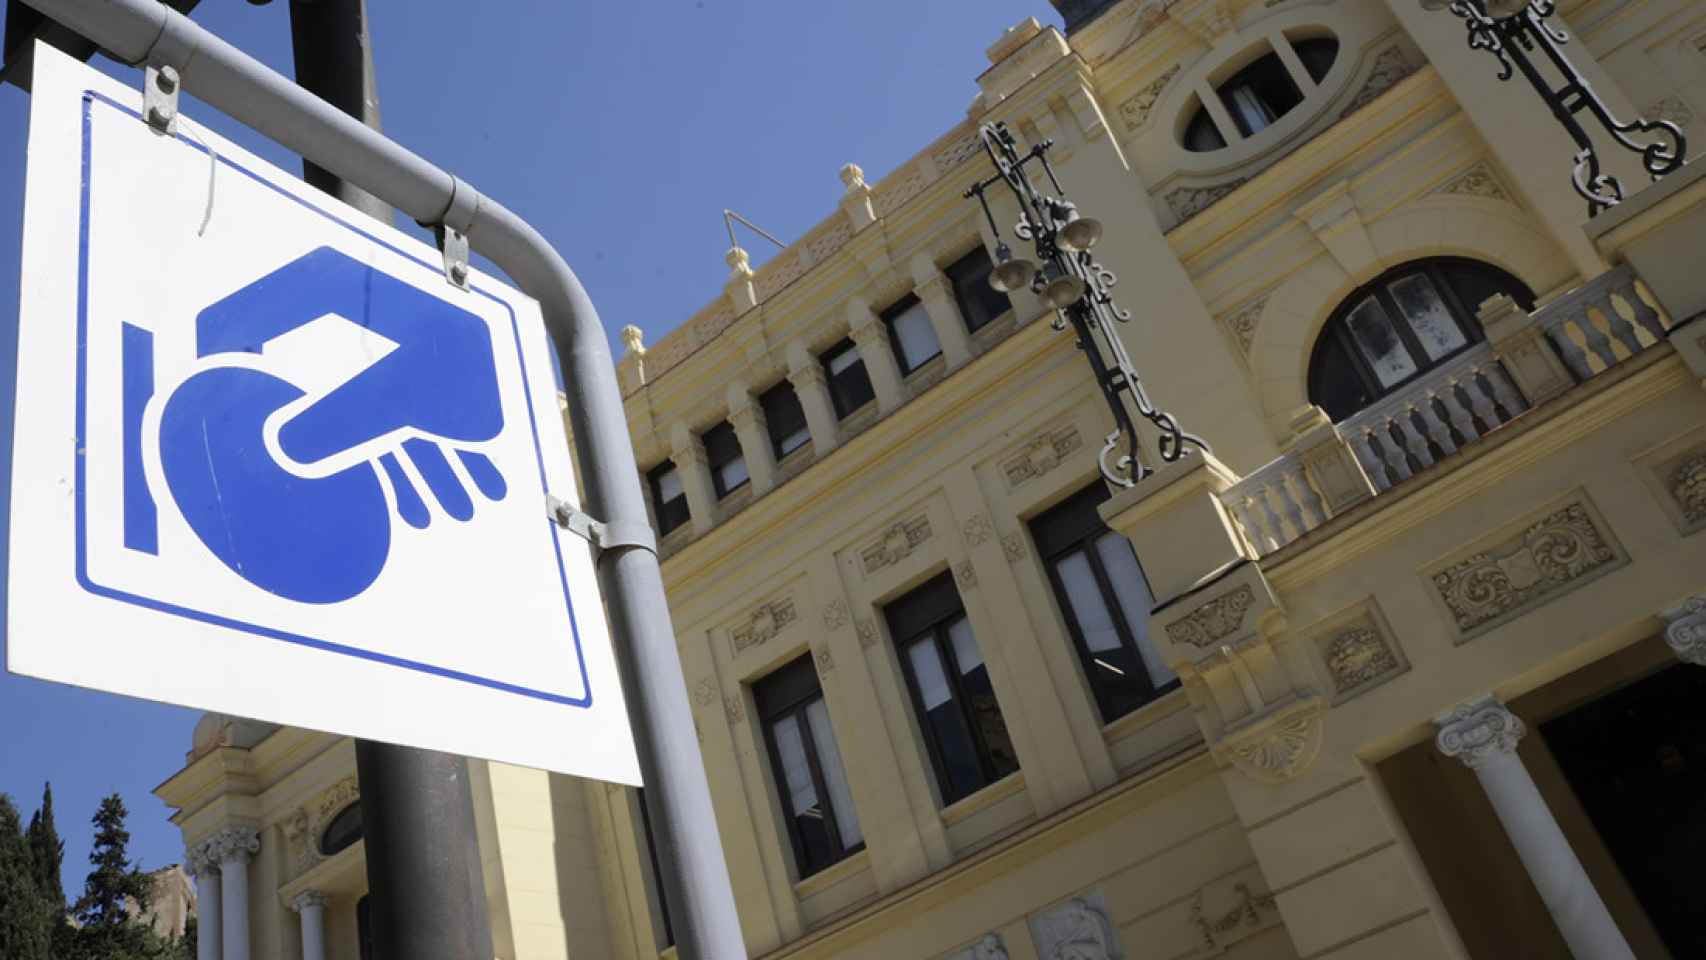 Símbolo del SARE de la Sociedad Municipal de Aparcamientos de Málaga (Smassa).